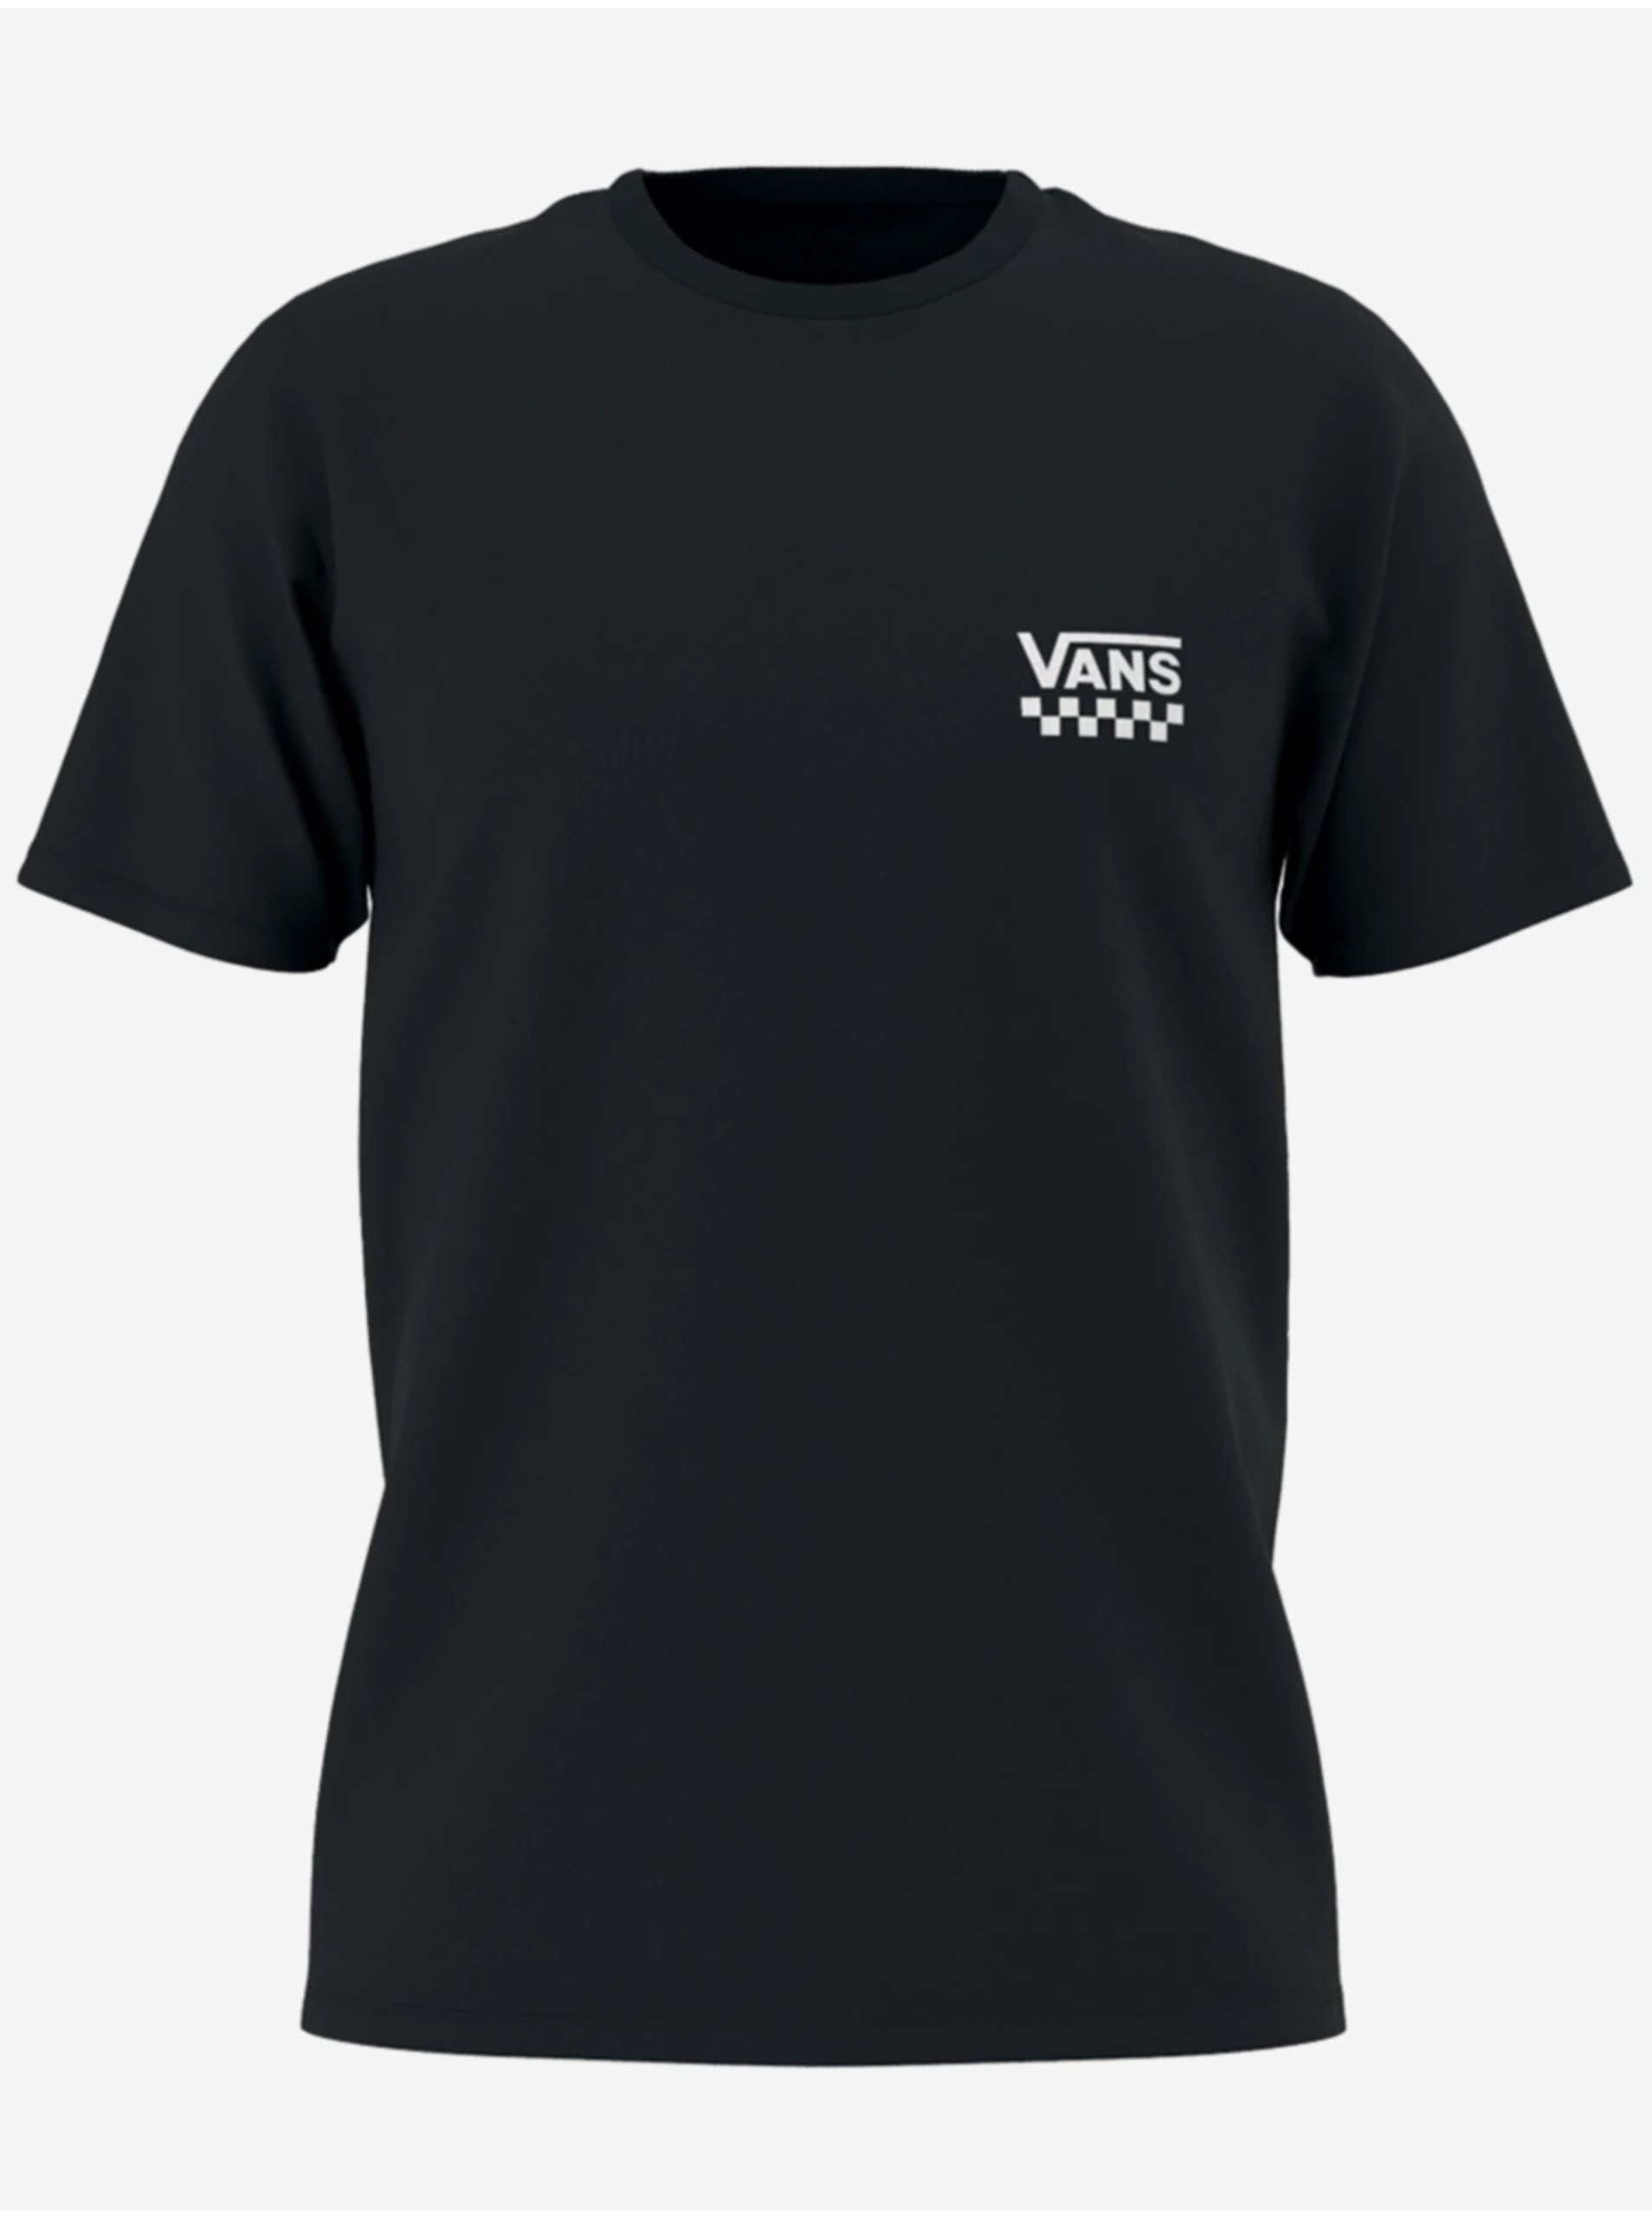 Herren T-shirt Vans